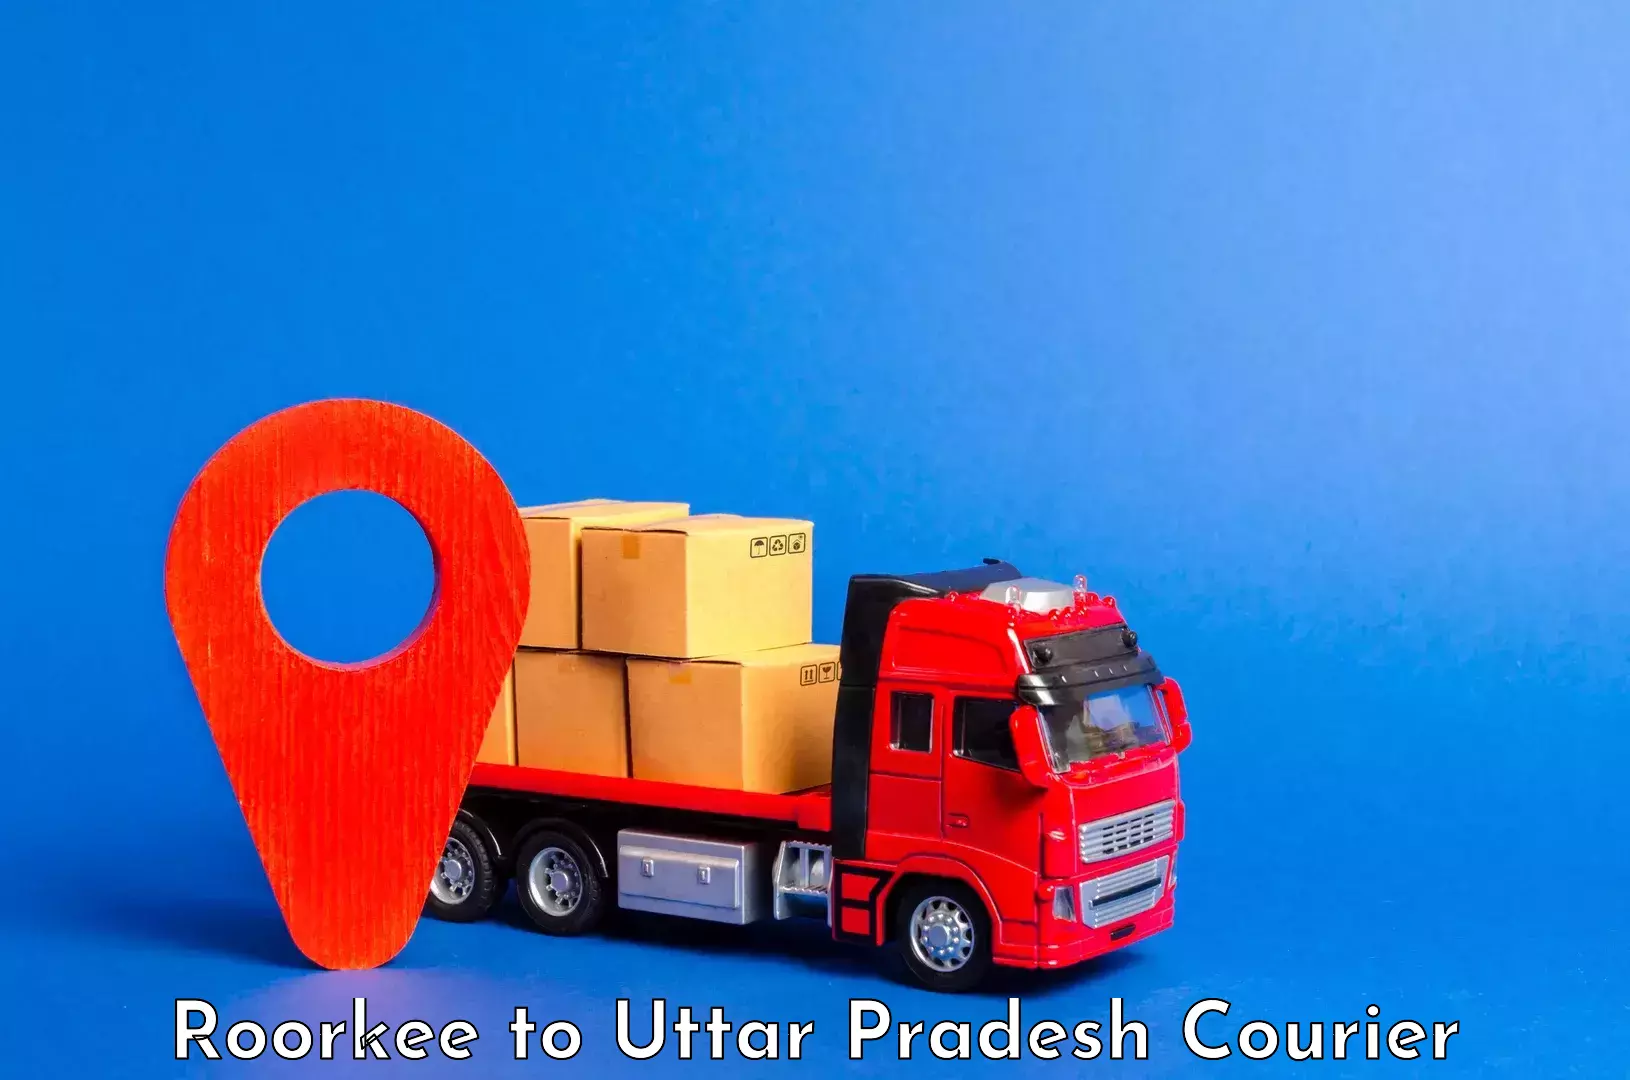 Baggage transport network Roorkee to Uttar Pradesh